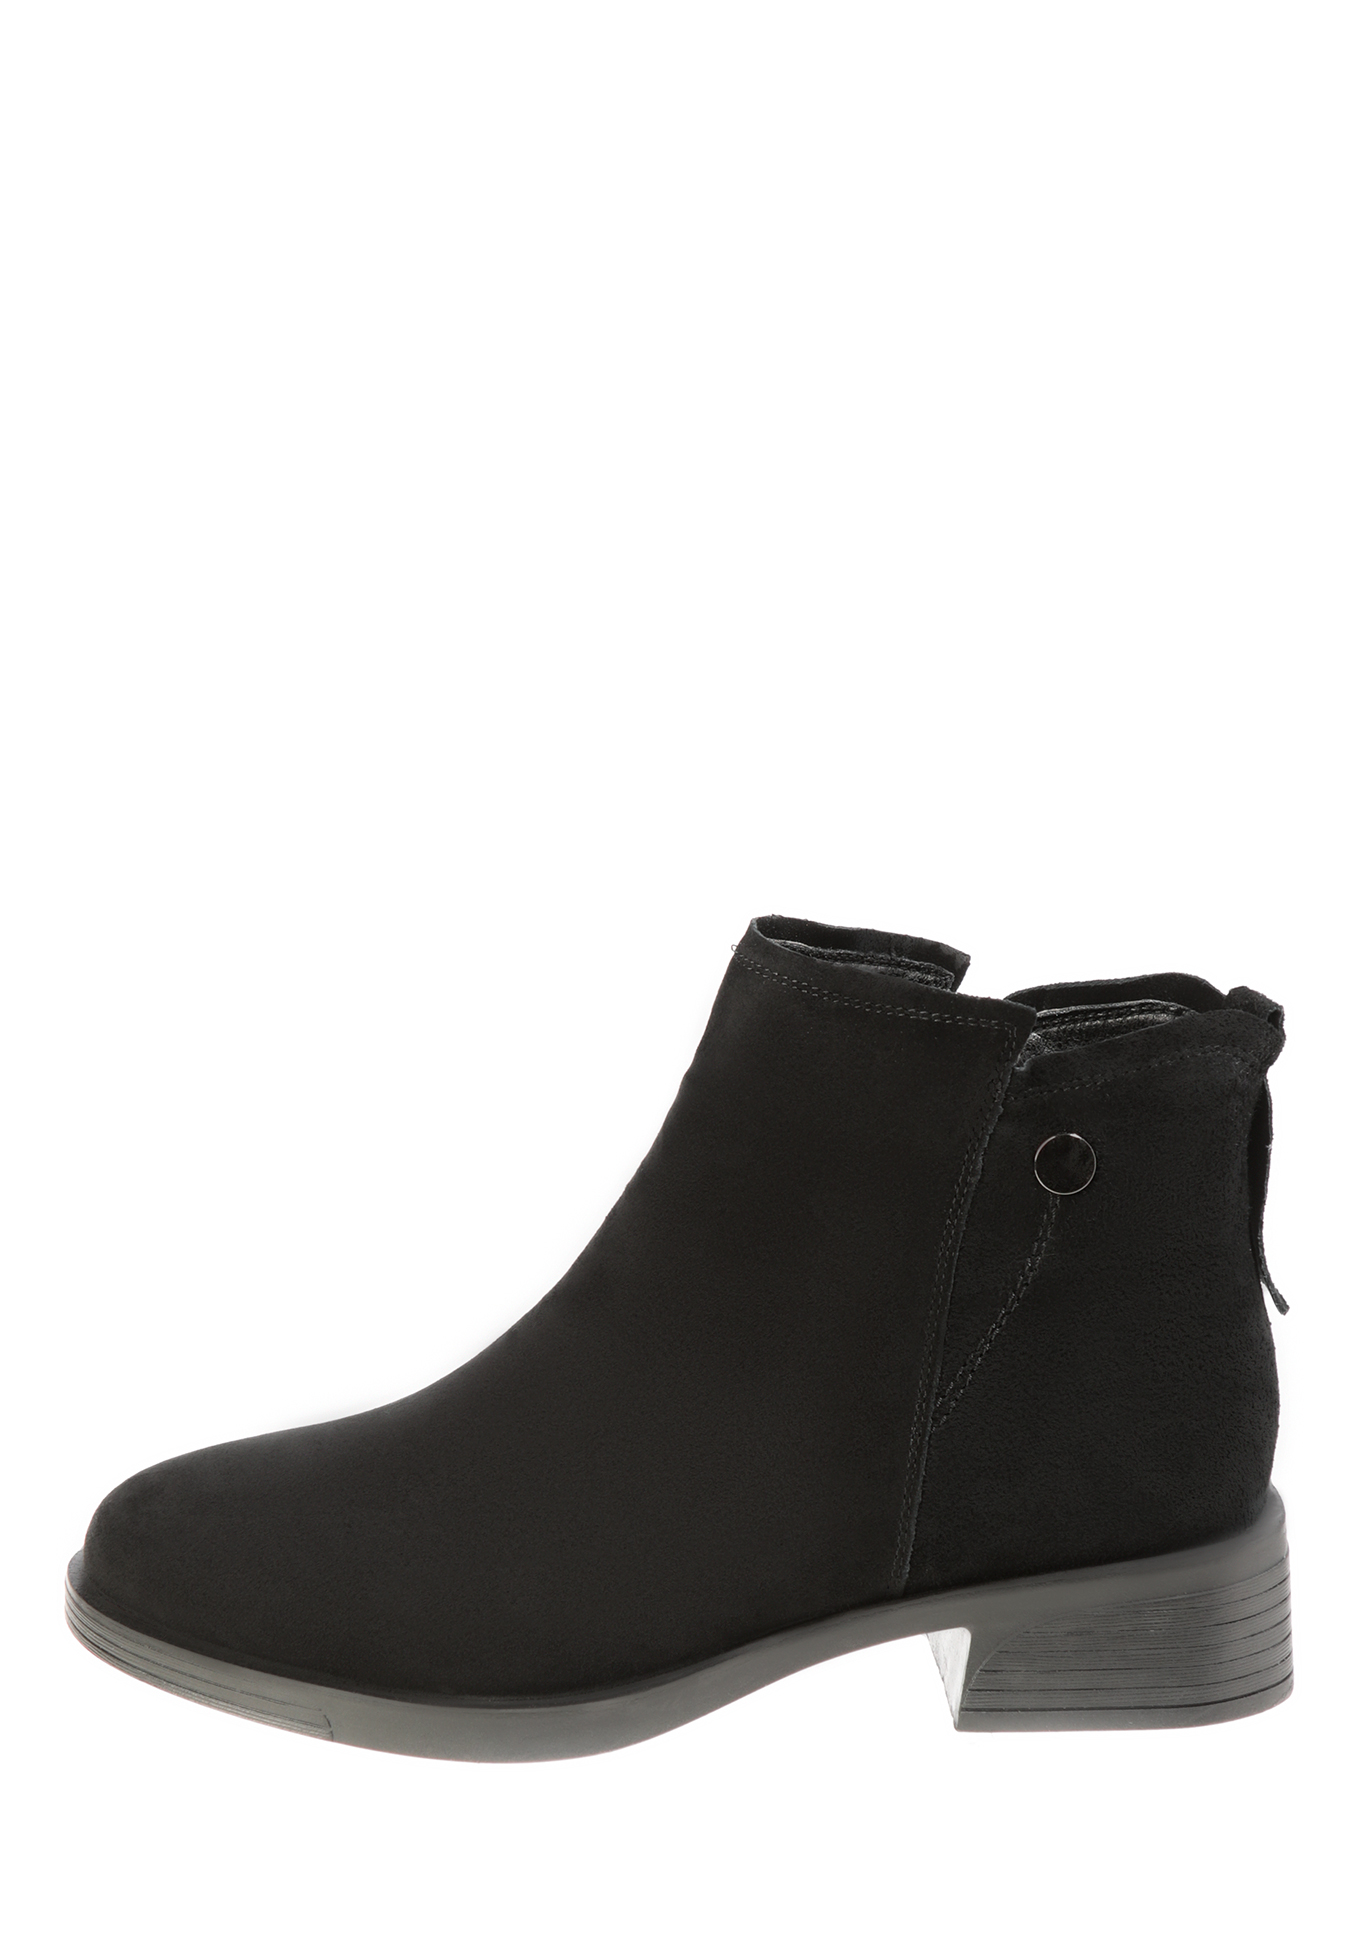 Ботинки «Юфез», женские Makfine, размер 36, цвет черный - фото 3